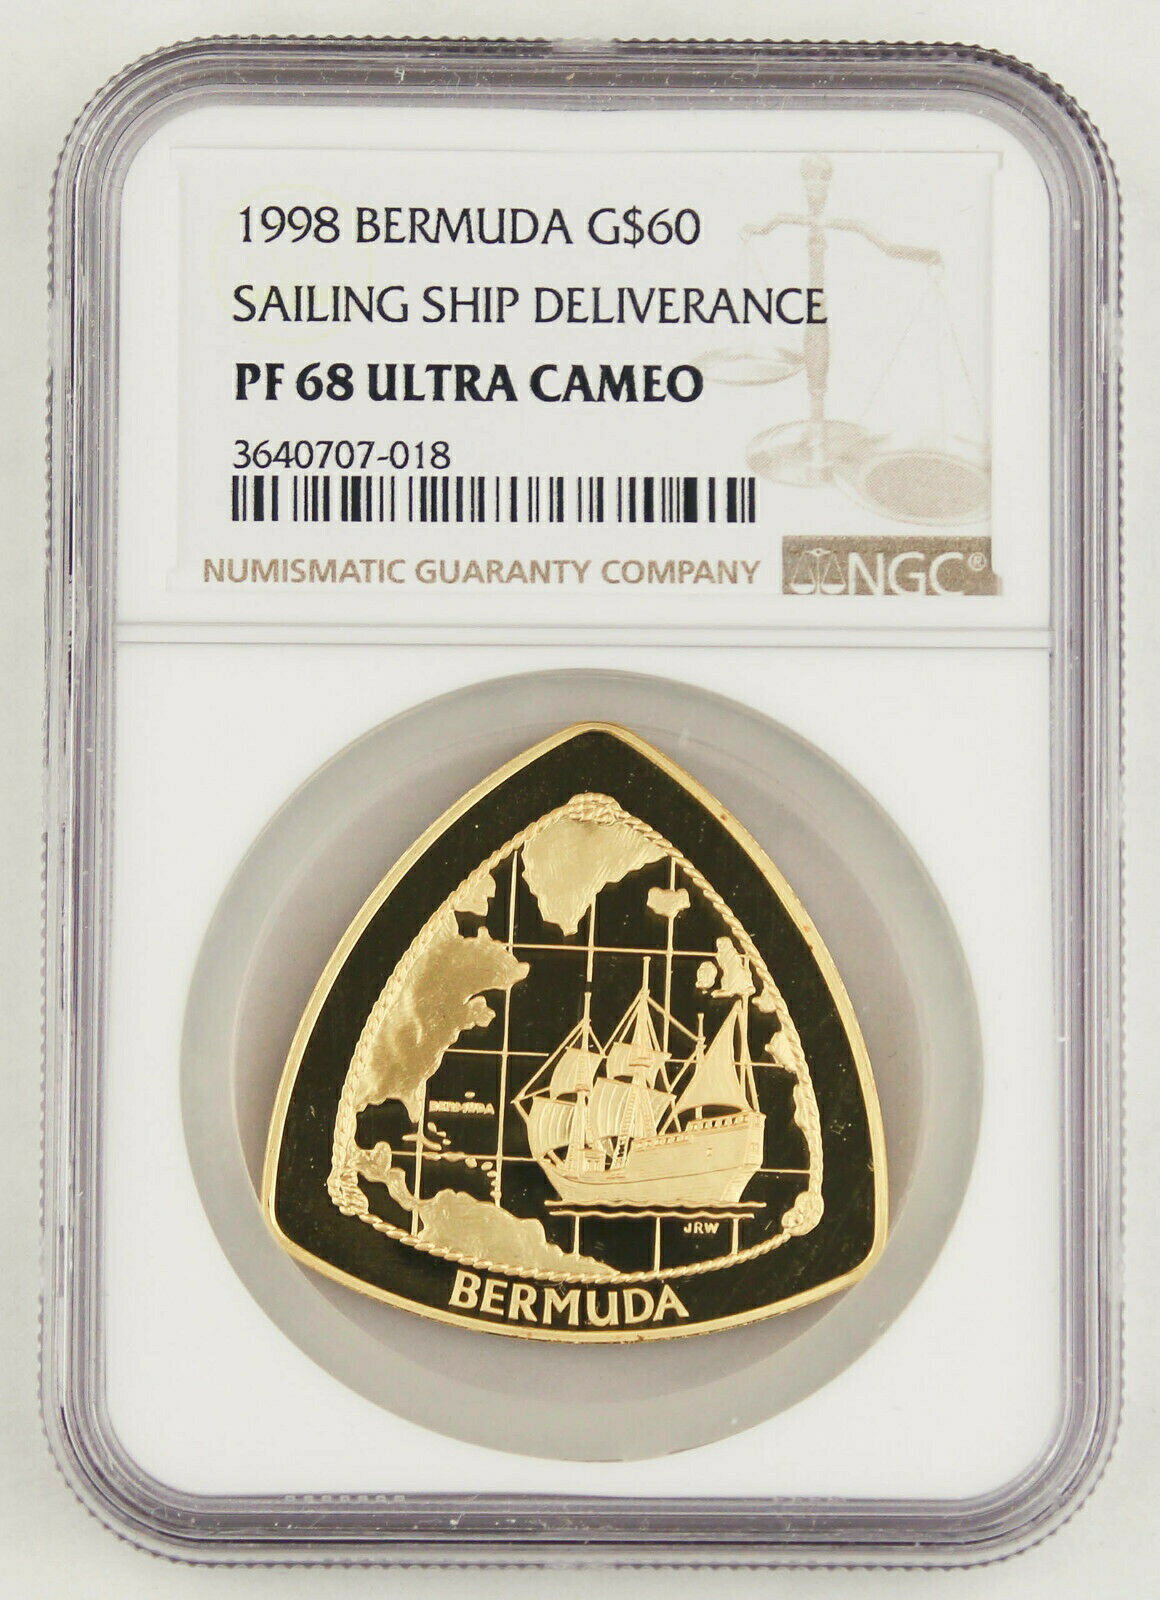 【極美品/品質保証書付】 アンティークコイン 金貨 Bermuda 1998 1 Oz Gold Proof Triangular $60 Coin NGC PF68 Ultra Cam Sailing Ship [送料無料] #gct-wr-011201-12359